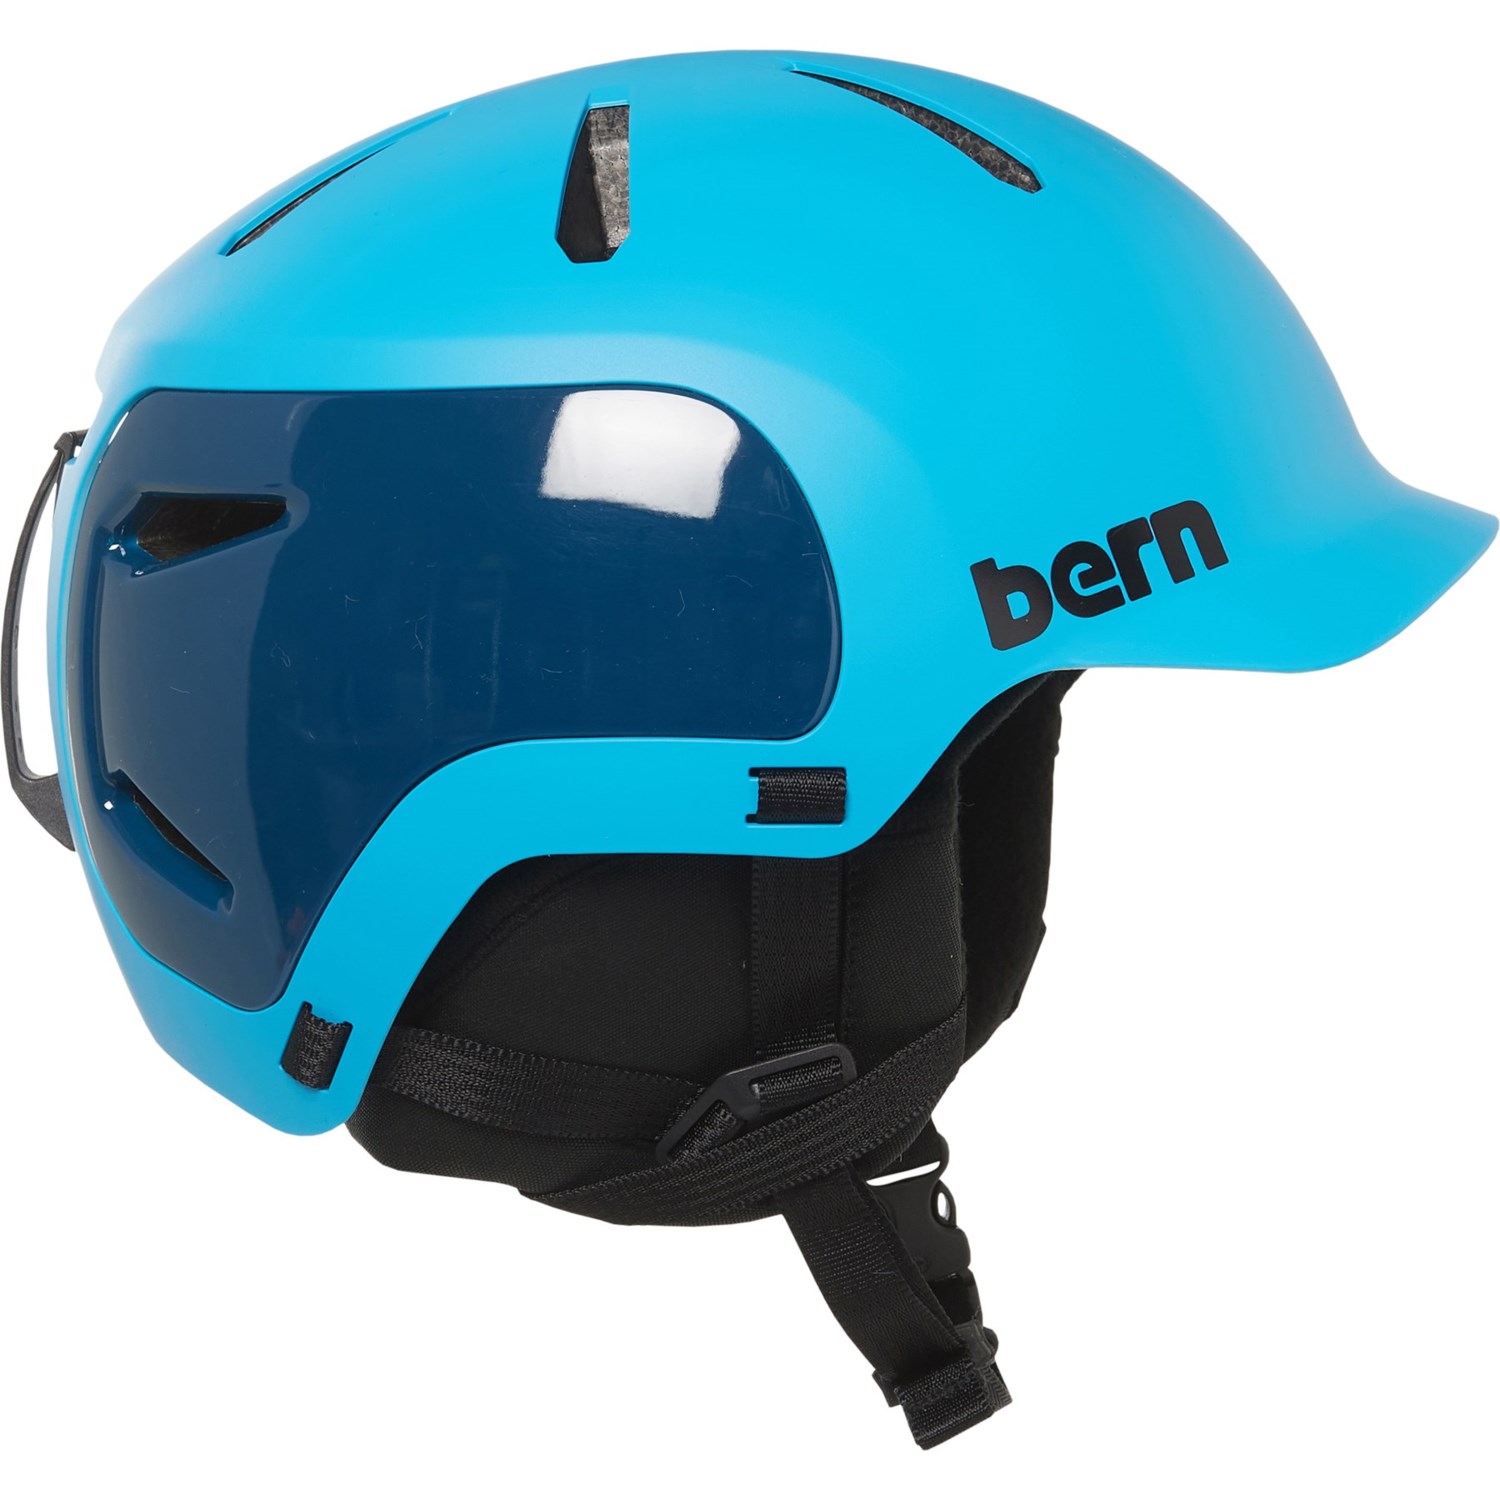 ■商品詳細■ブランドBernバーン■商品名Watts 2.0 Ski Helmet ワット 2.0 スキー ヘルメット■商品状態新品未使用・並行輸入品■色Matte Ocean Blue/Black2枚目以降は参考画像となります。詳細オールシーズンスタイル-BOA ダイヤル制御フィットシステムによる正確なフィット感-クリックマウントライトに対応 (商品には含まれません)。-空気の流れを増やすための 11 個の通気口-つば一体型-フラットストラップディバイダーを敷く-圧縮成形パッド-インモールド EPS ライナー付き軽量ポリカーボネート シェル-寒いライド用のイヤーカップとトップニットが含まれています-サマーニット対応-フィットシステム：BOAフィットシステム■備考(取寄) バーン ワット 2.0 スキー ヘルメット Bern Watts 2.0 Ski Helmet Matte Ocean Blue/BlackBern ヘルメット アクセサリー スポーツ アウトドア ウインタースポーツ スキー スノーボード ブランドsi-2mngh